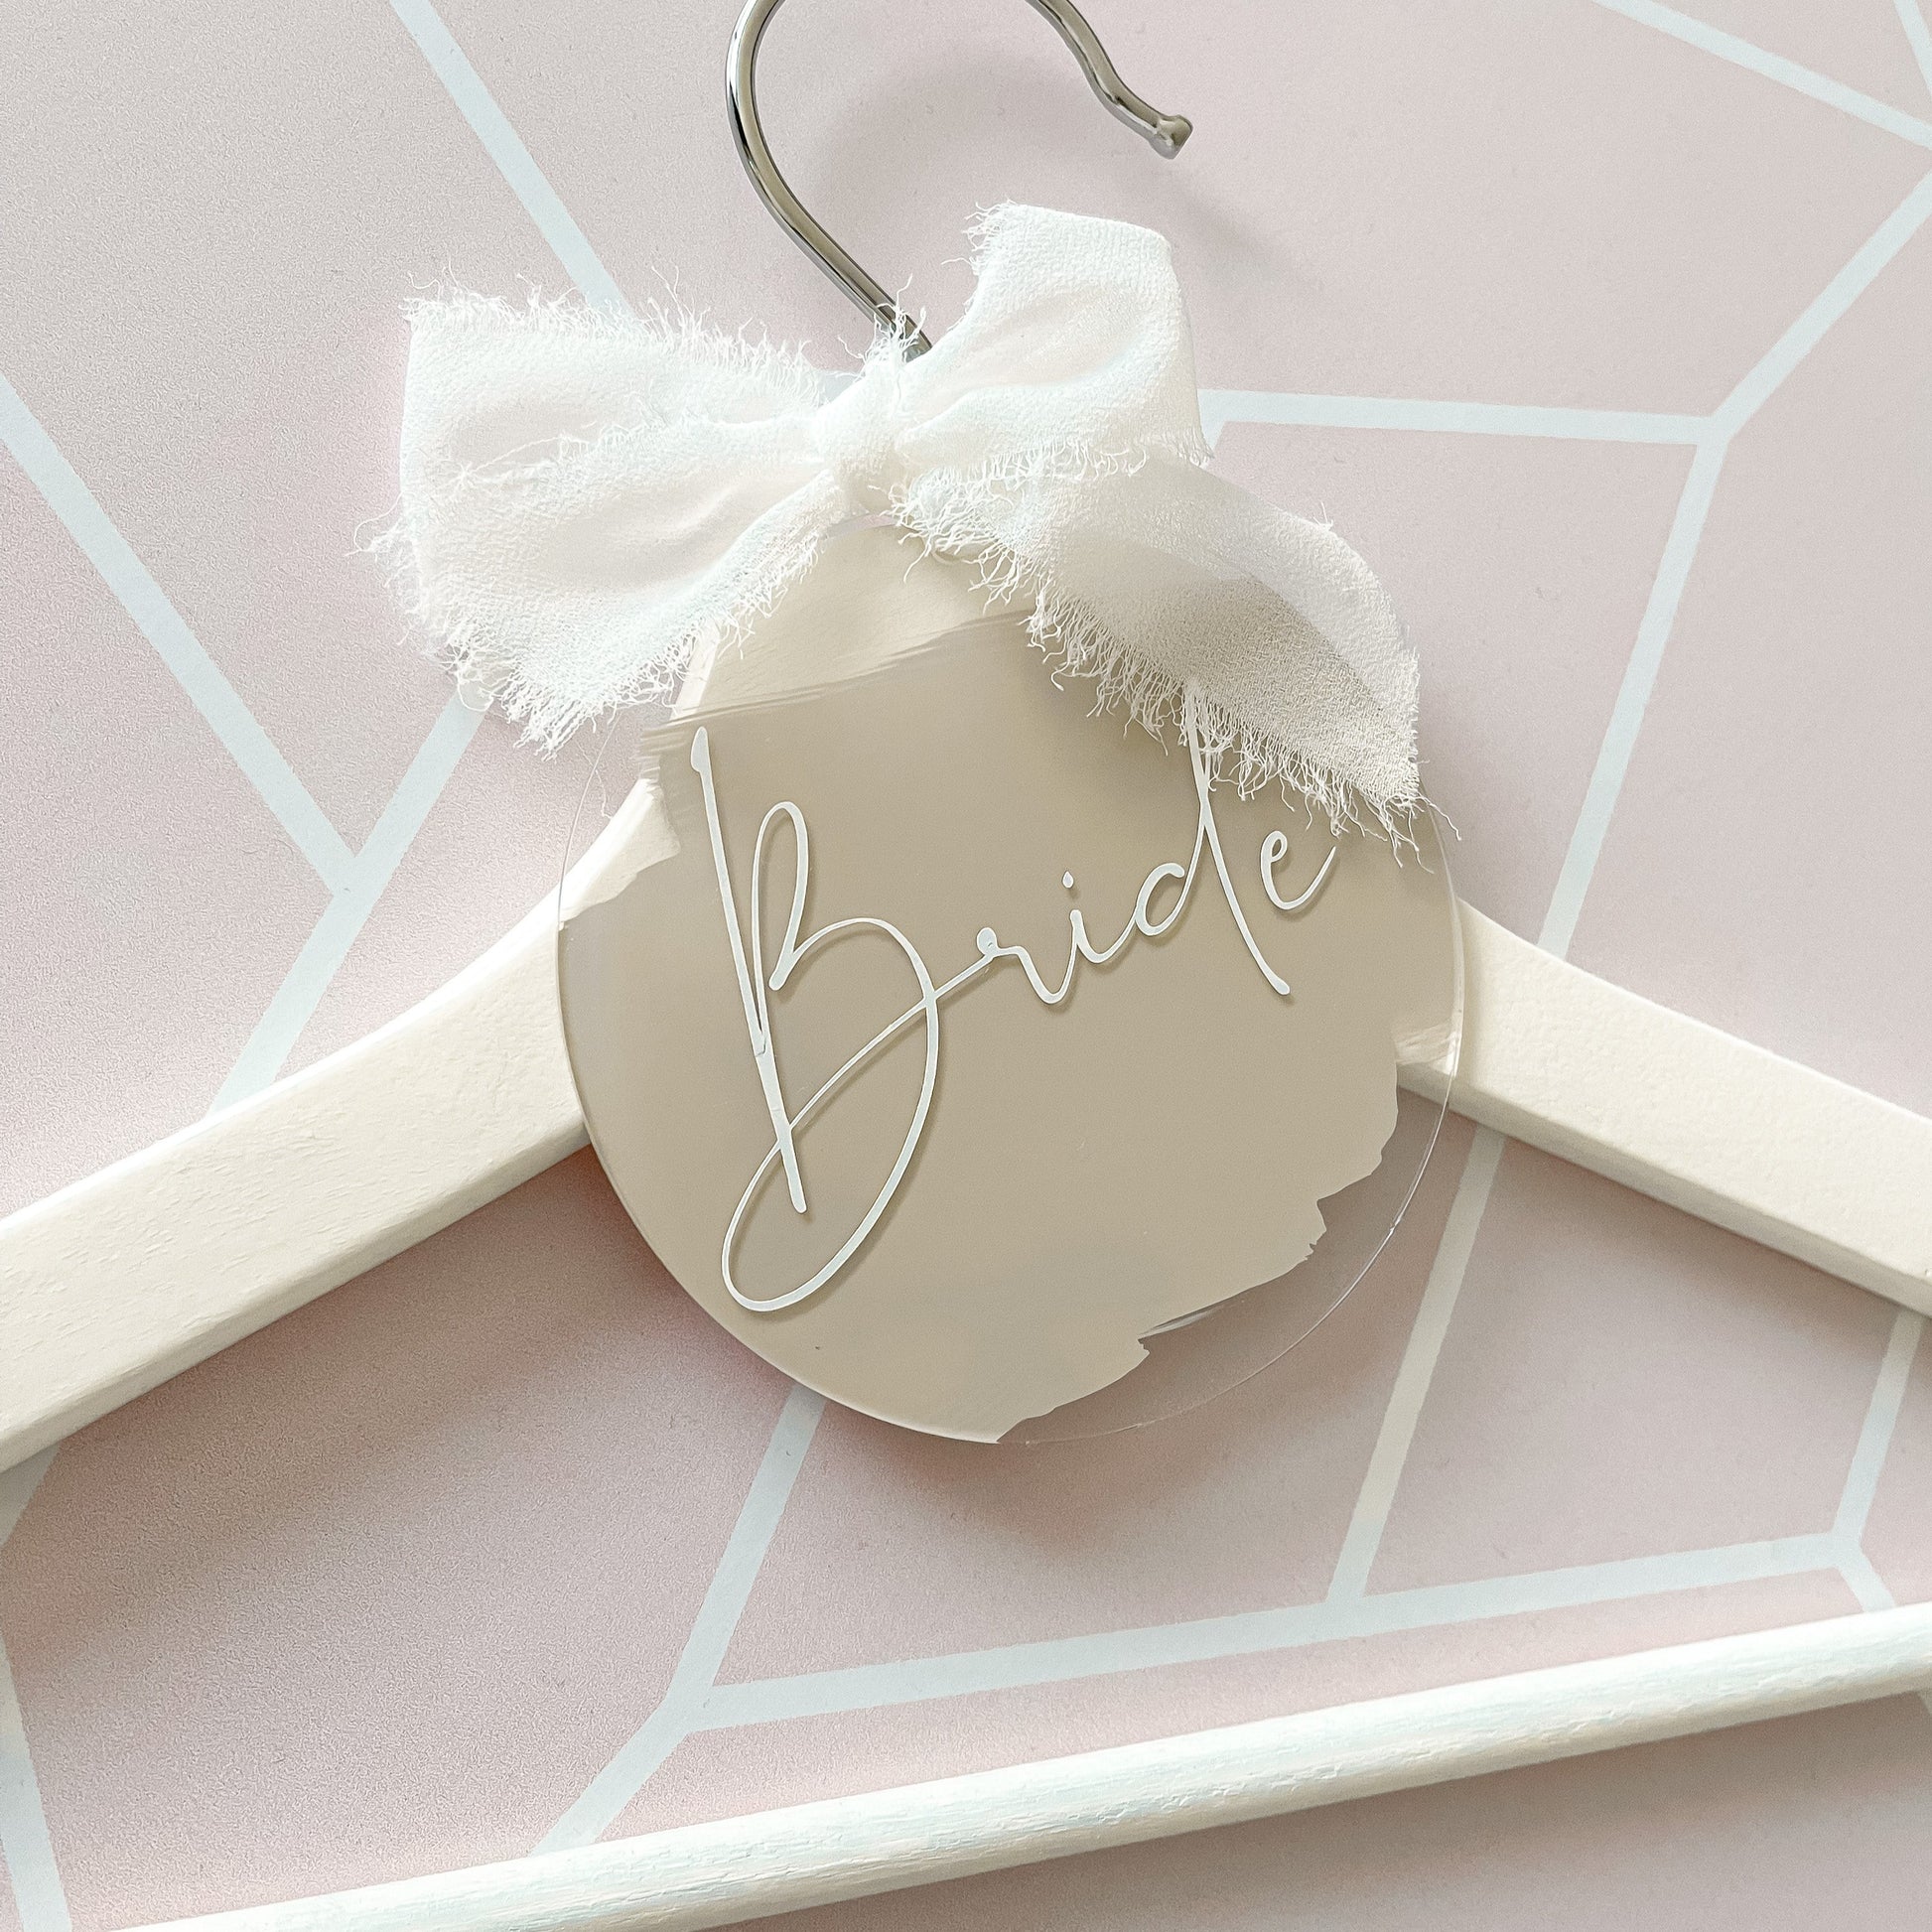 Bride hanger details